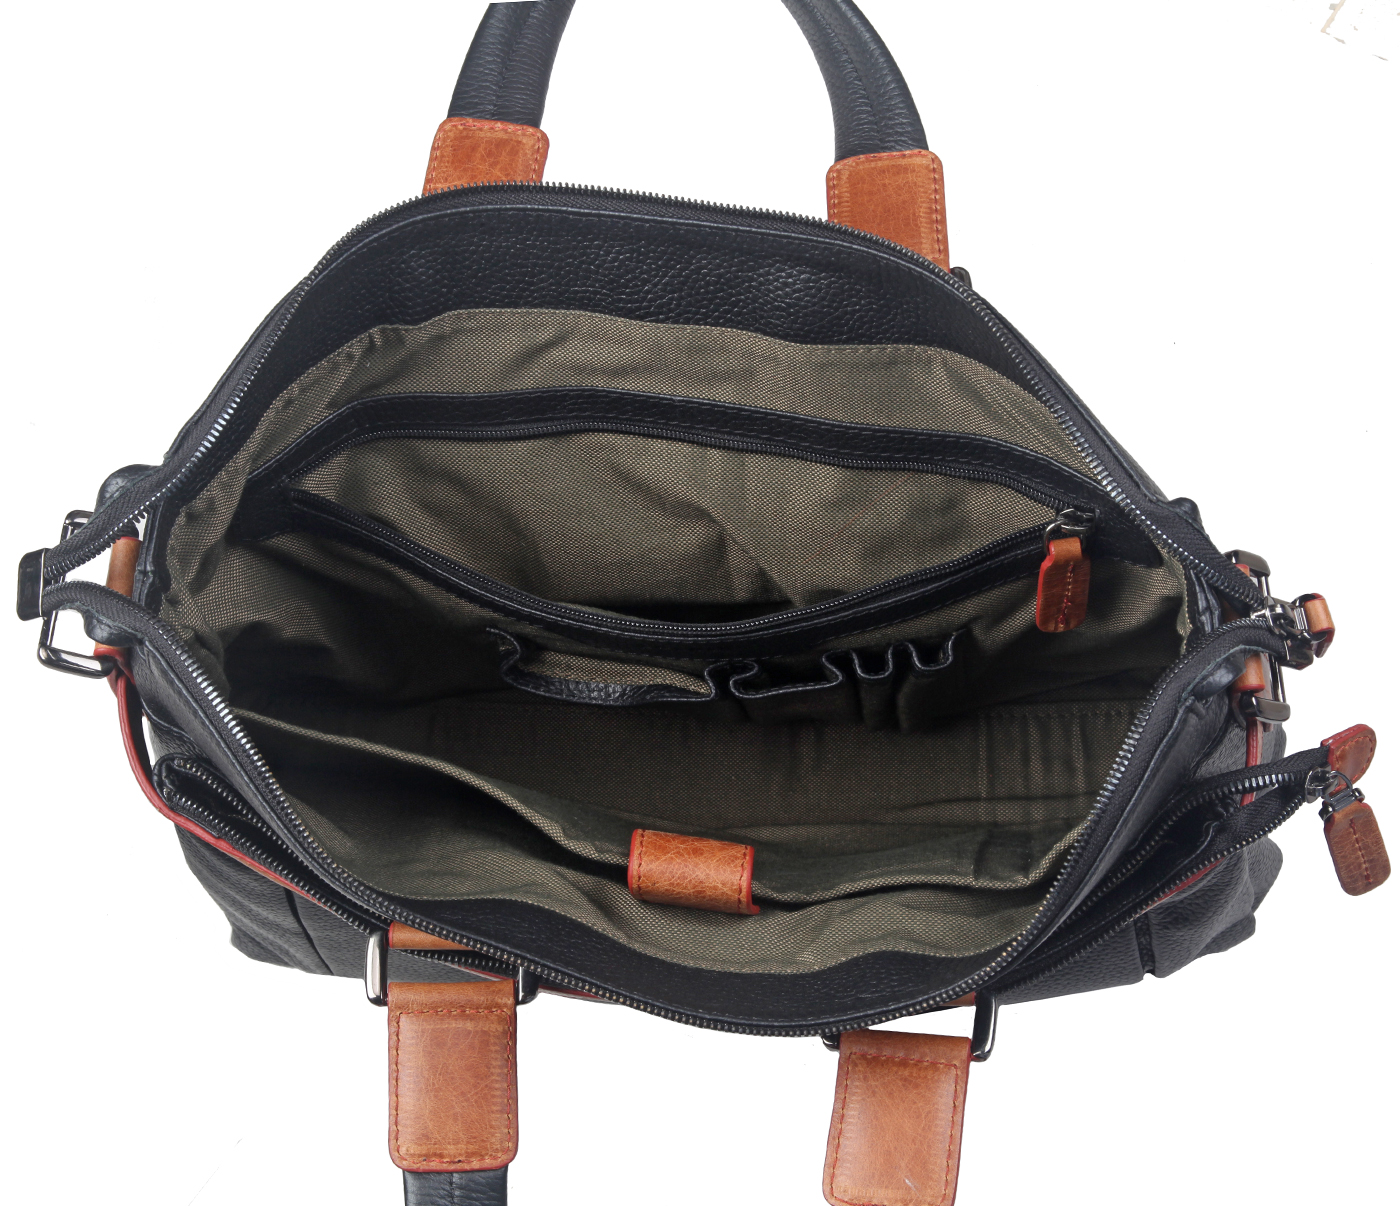 F65-Alex-Laptop cum portfolio messenger bag in Genuine Leather - Black/Tan